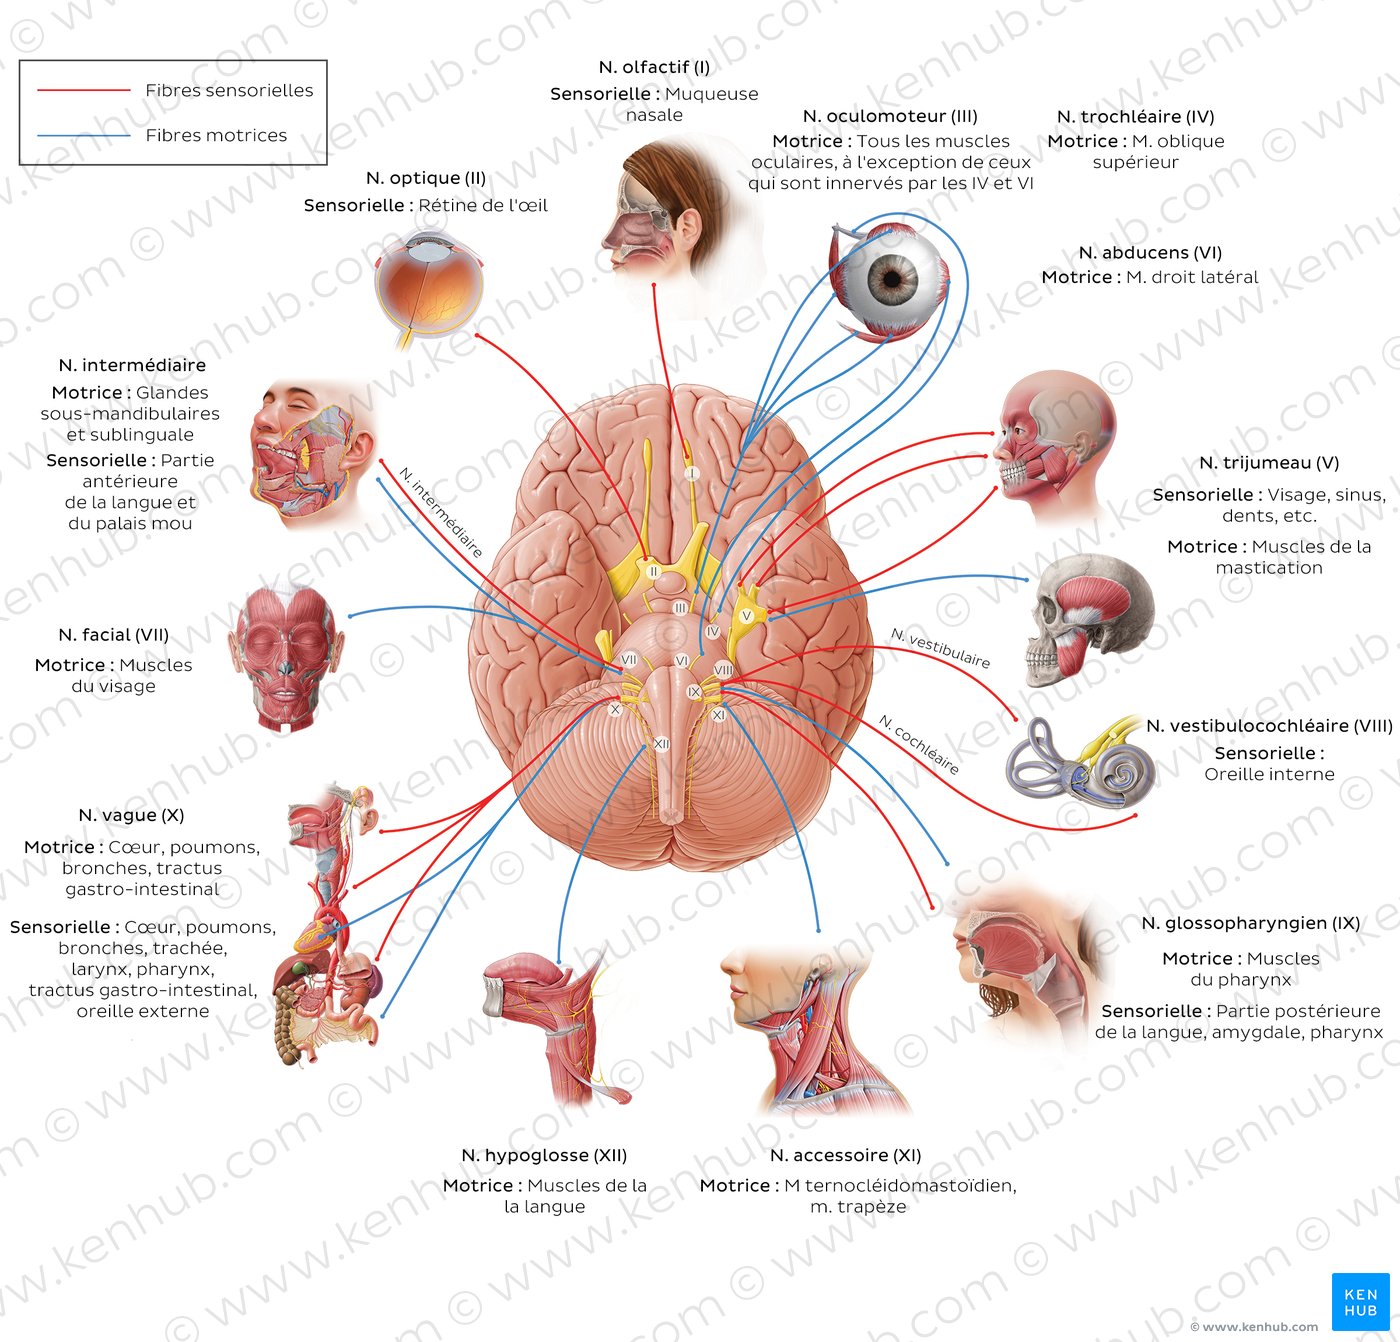 Fonctions des nerfs crâniens (schéma)